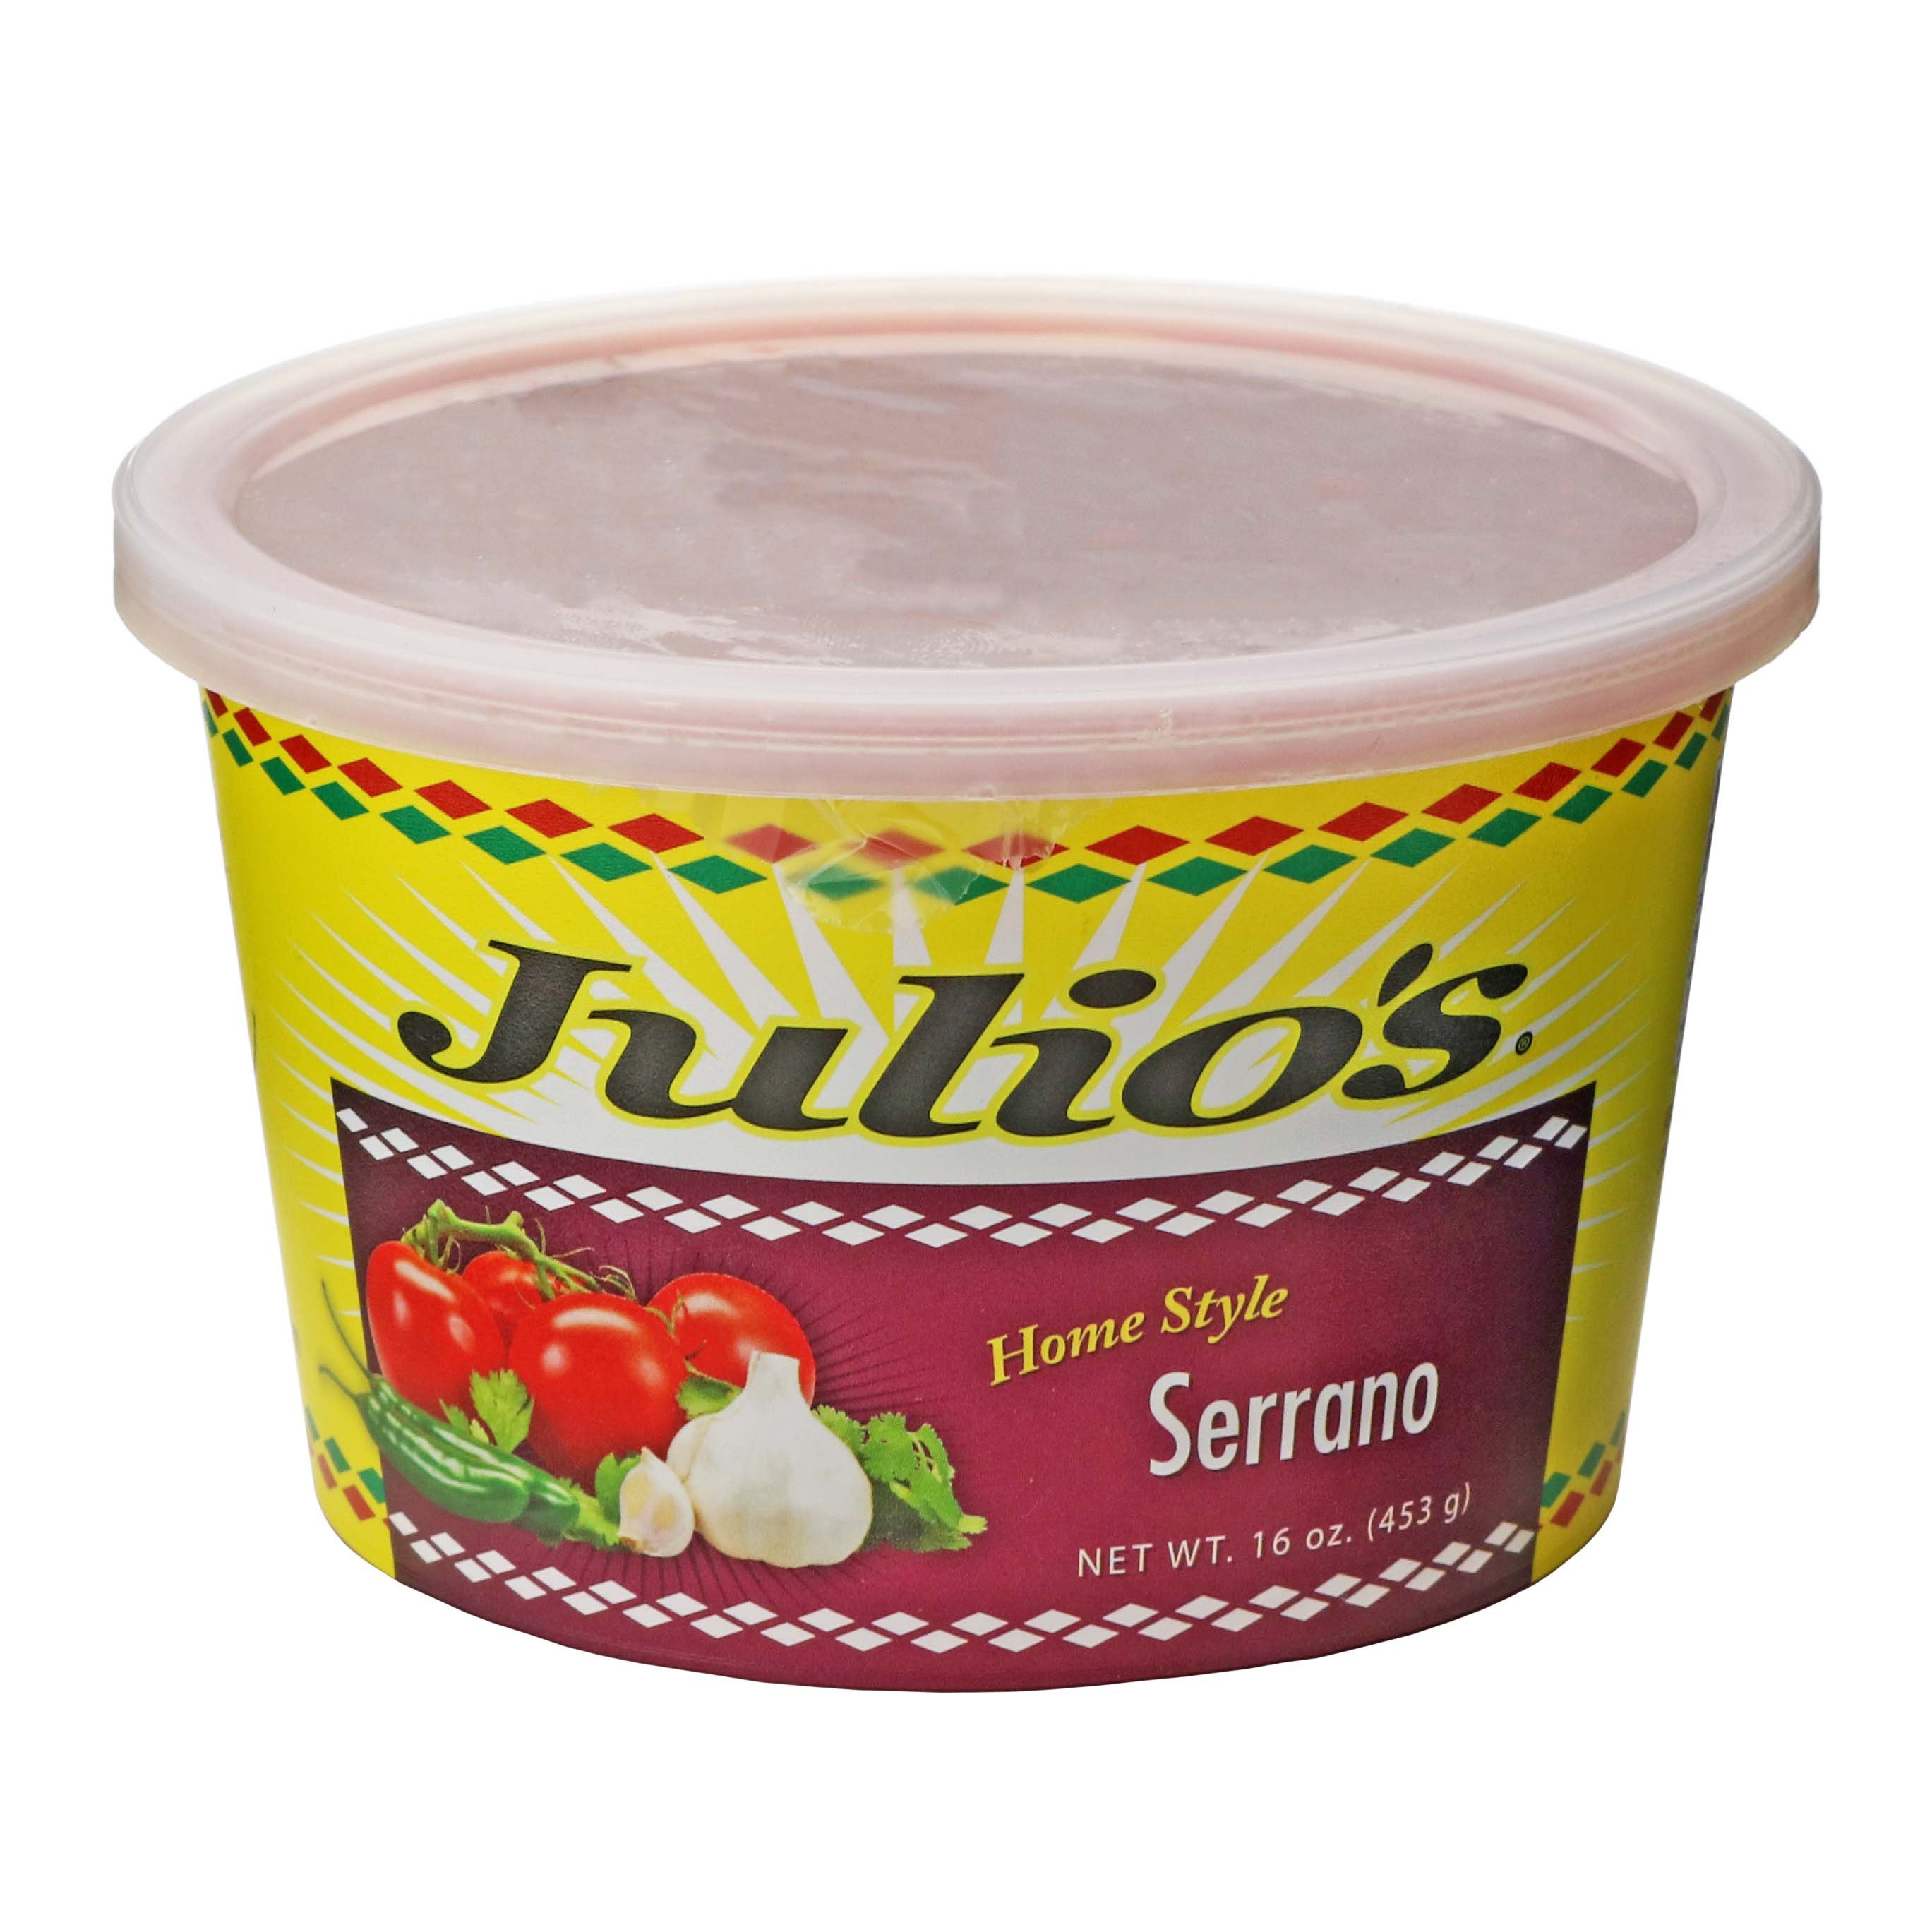 Julio's Homestyle Serrano Salsa